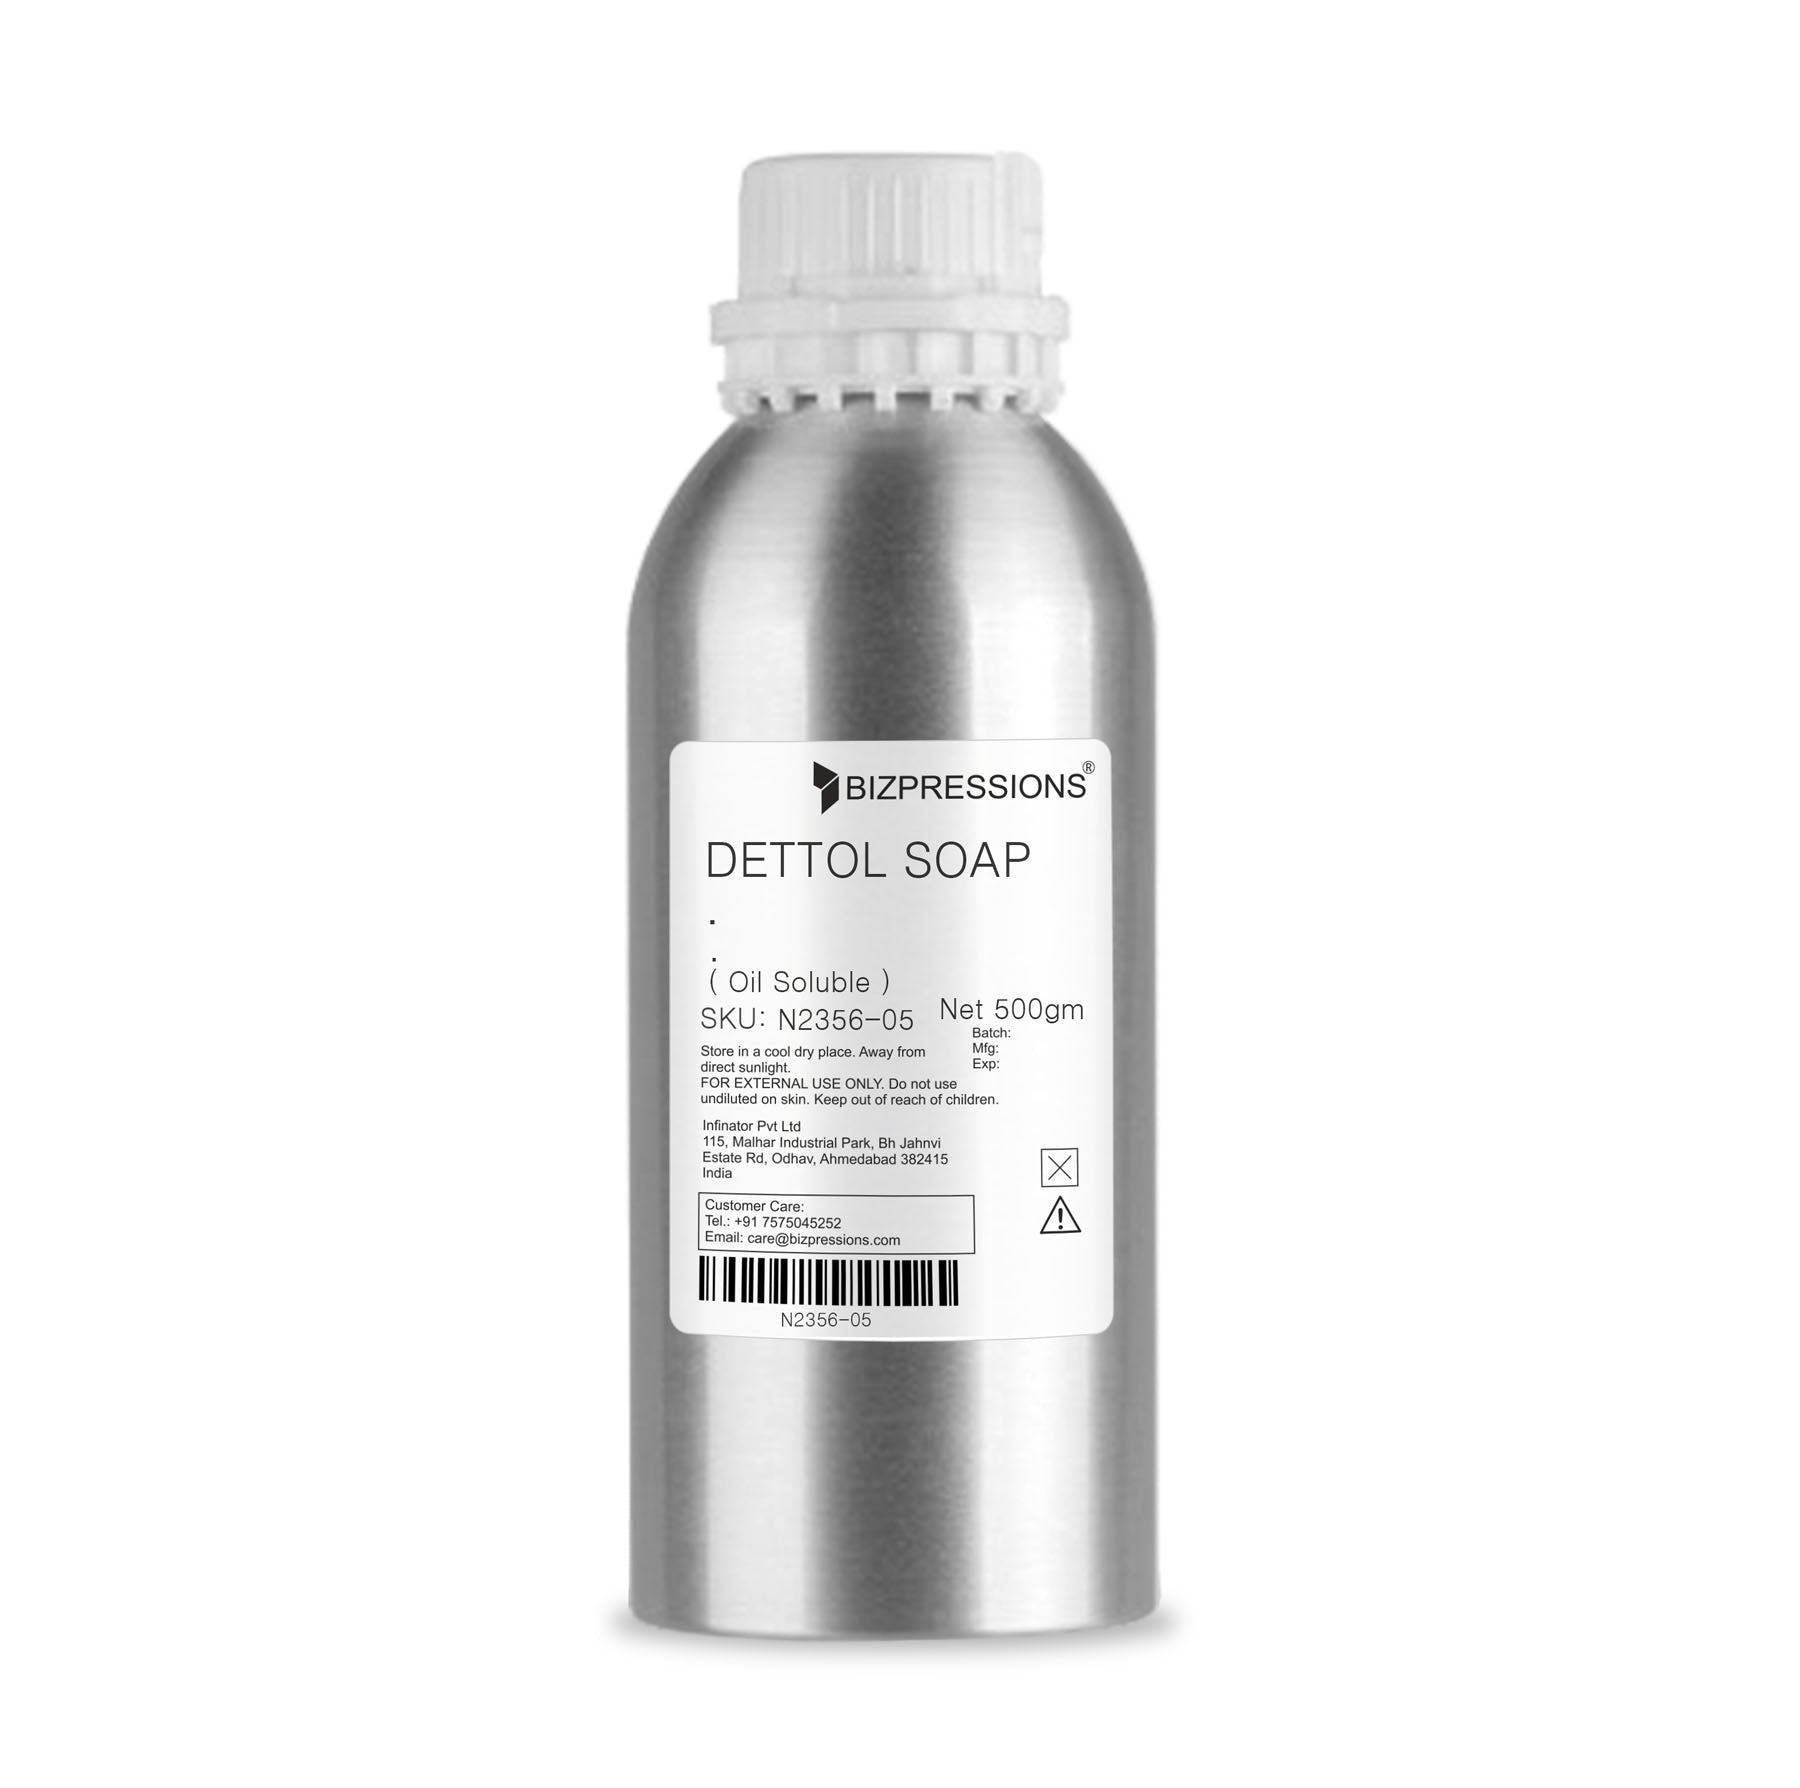 DETTOL SOAP - Fragrance ( Oil Soluble ) - 500 gm